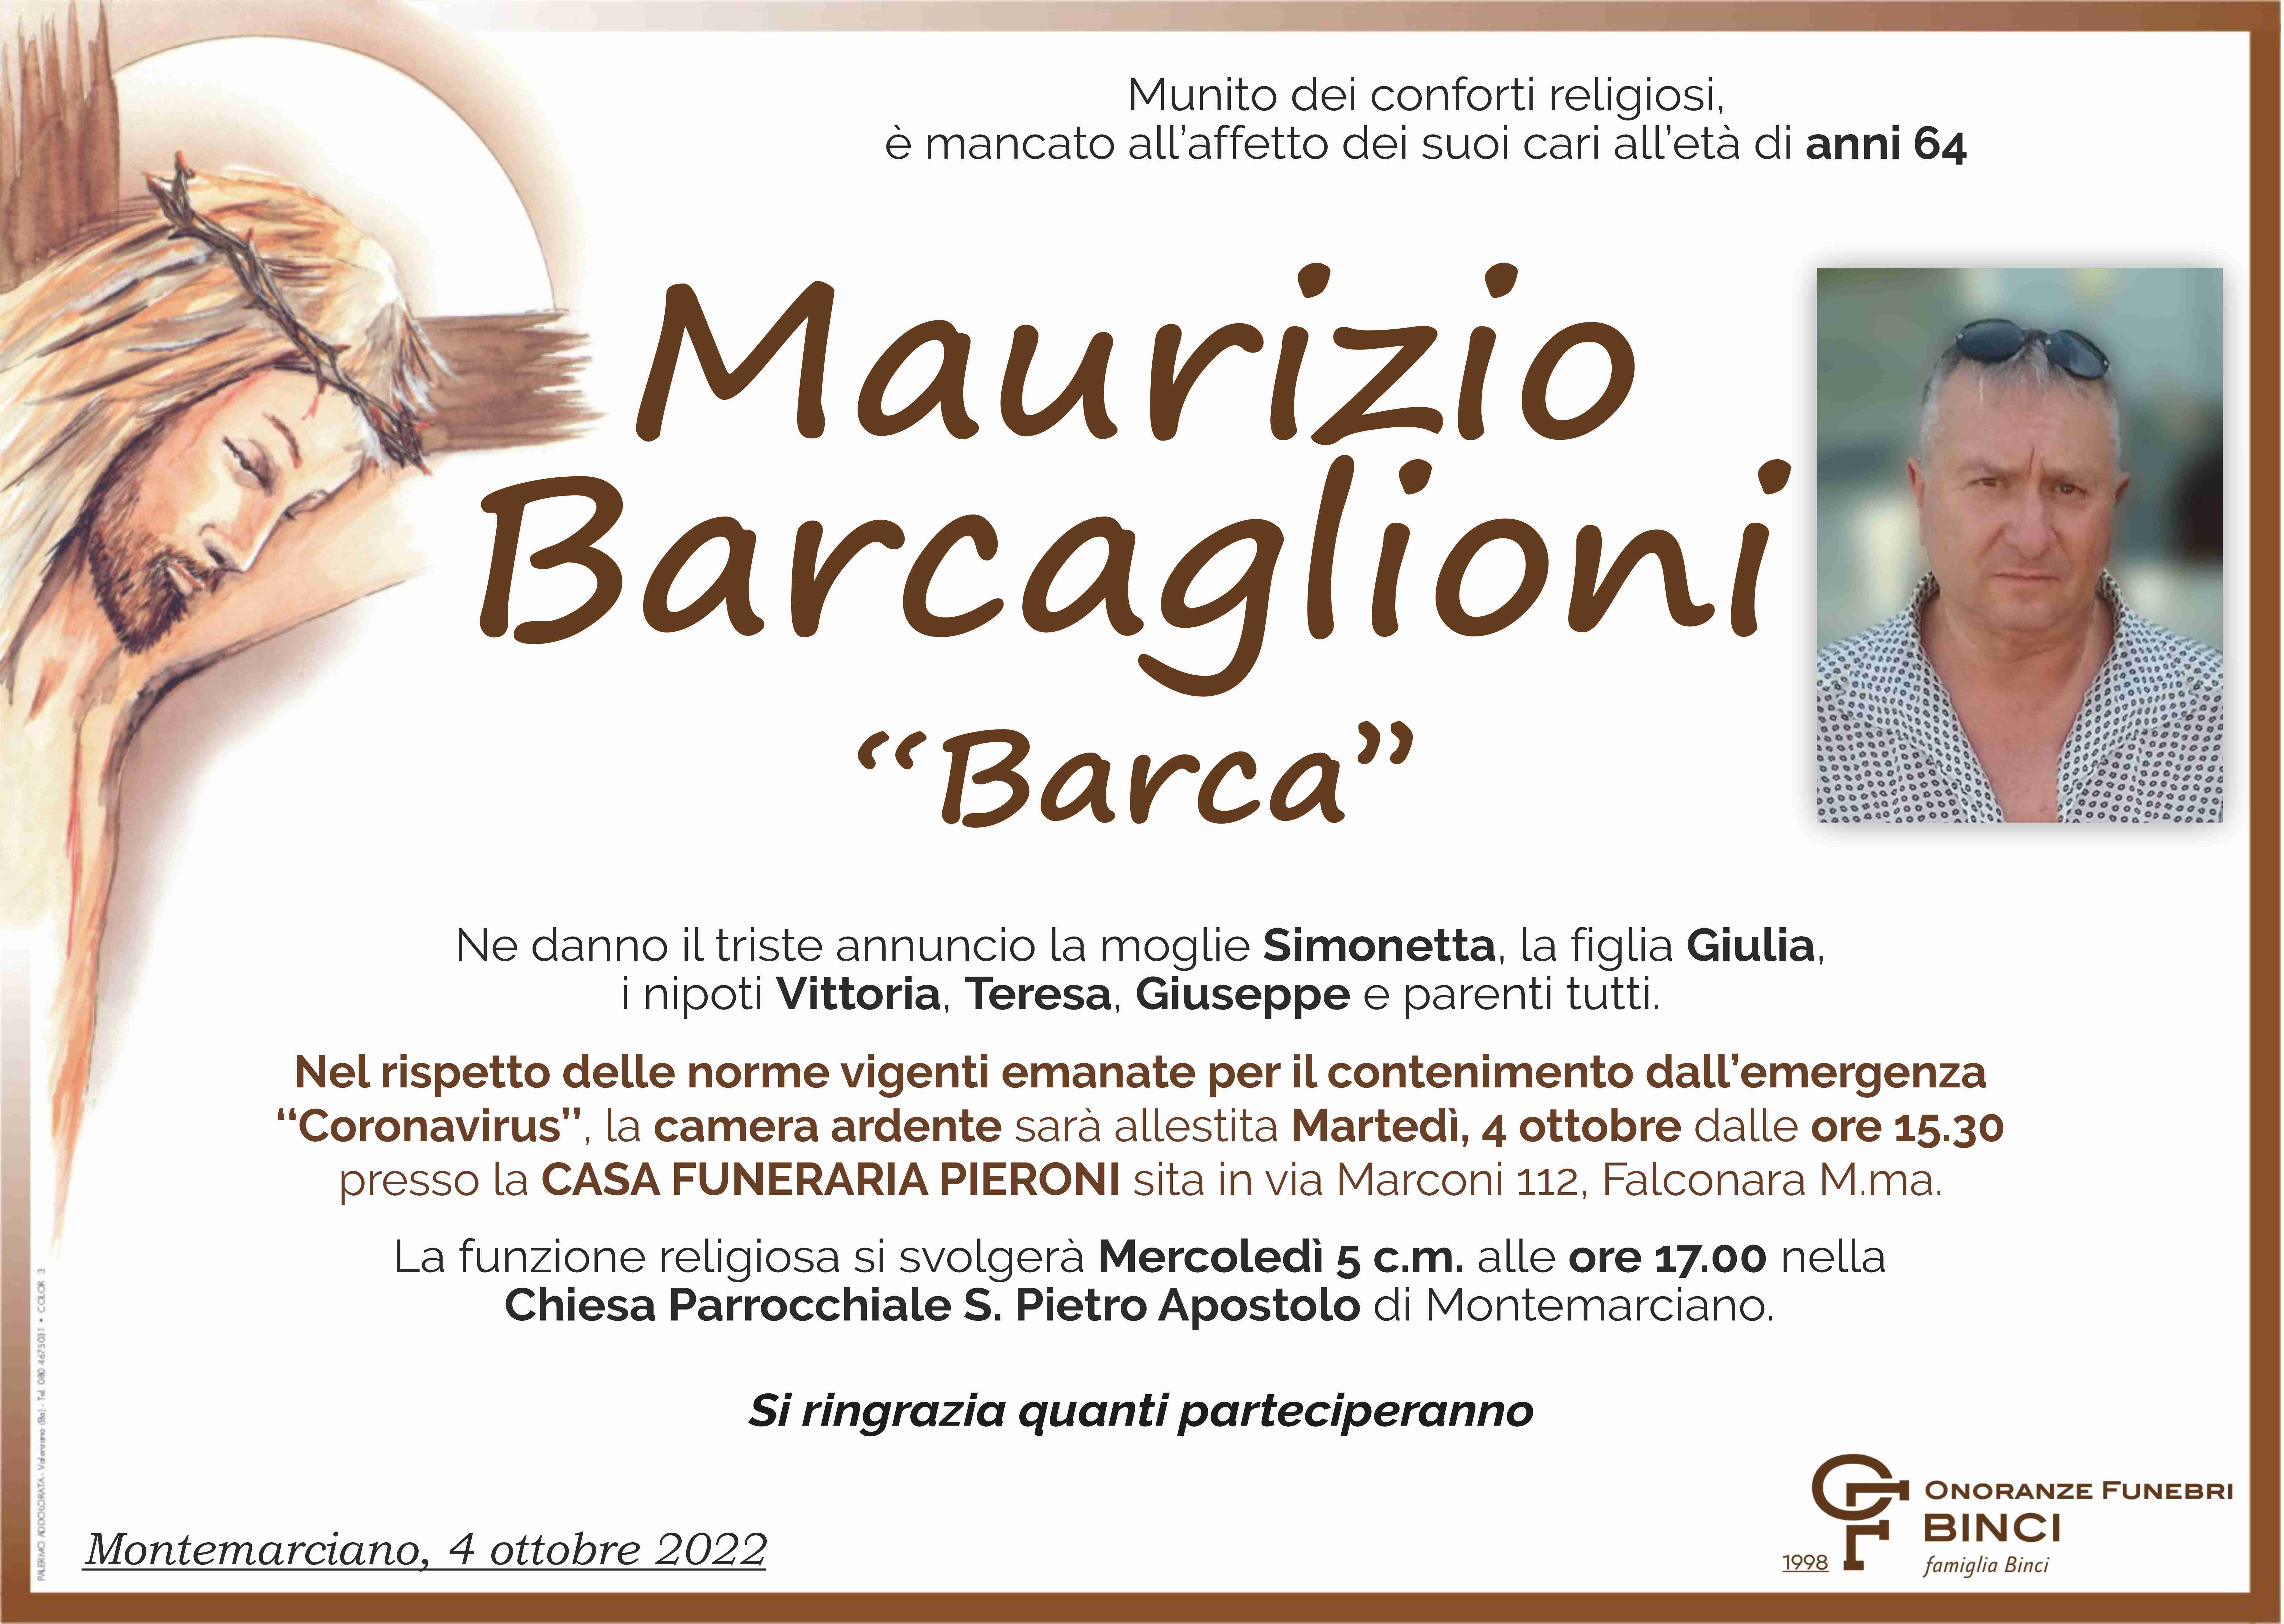 Maurizio Barcaglioni